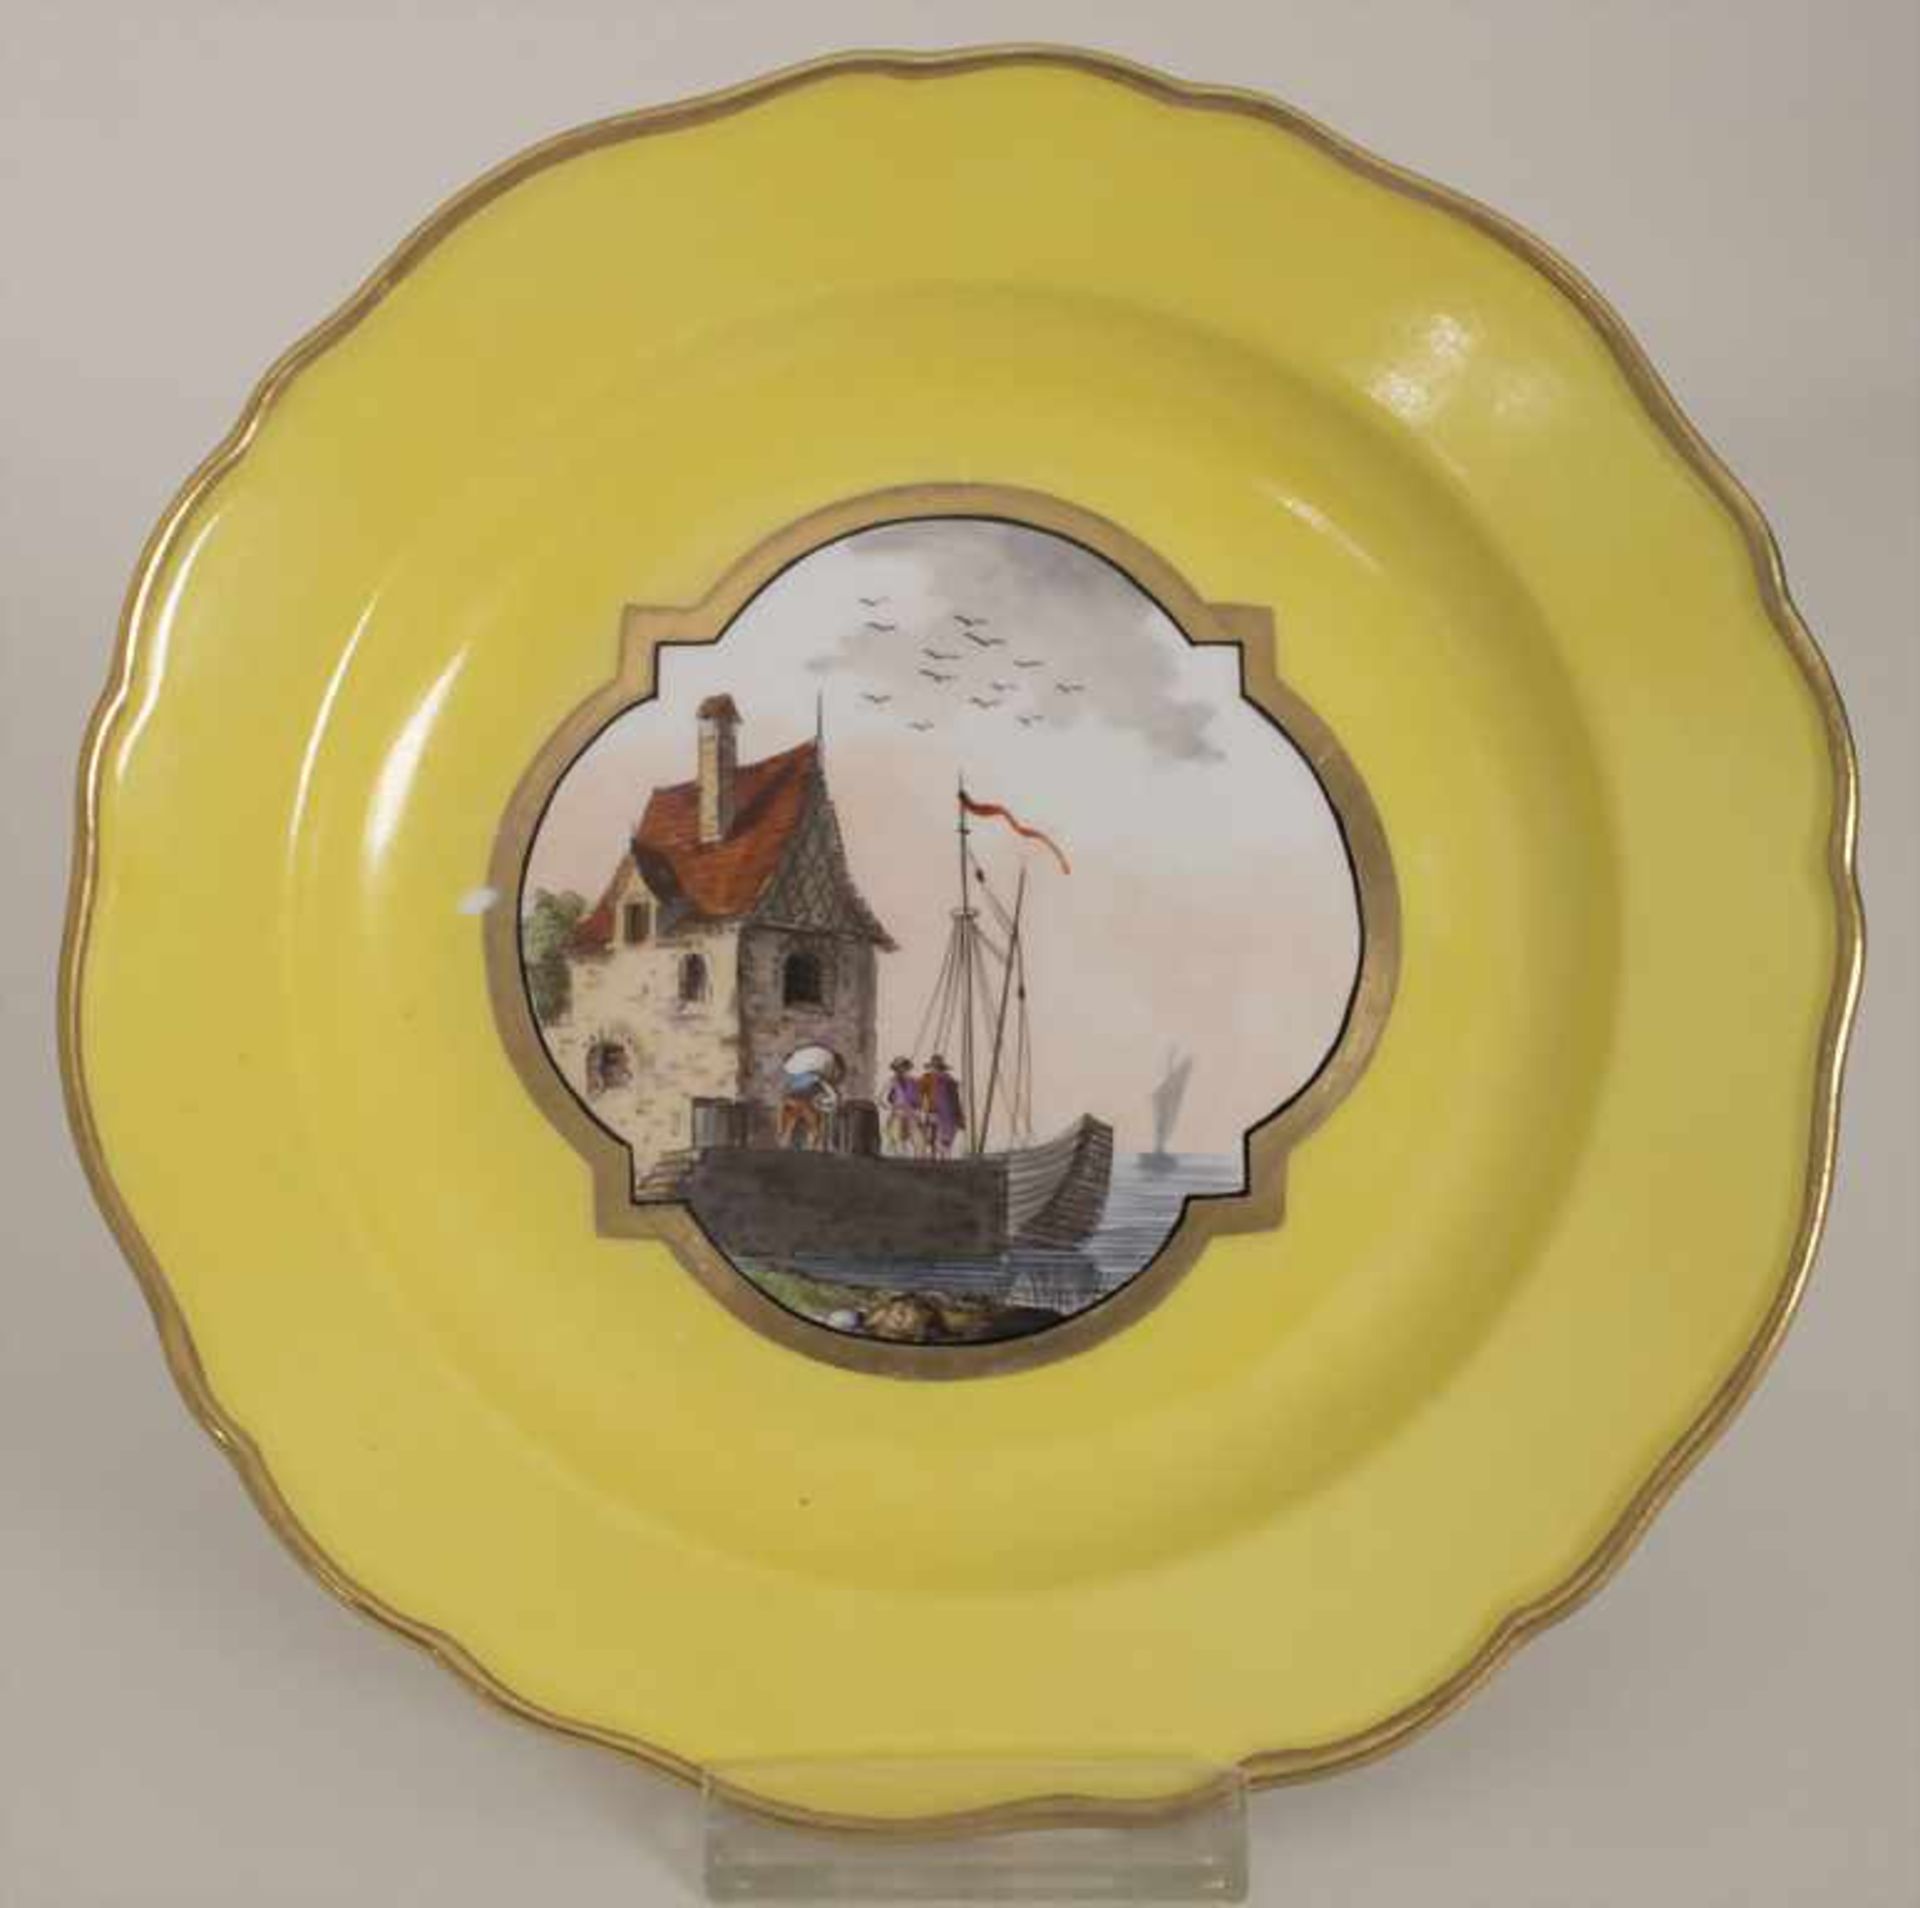 6 Ansichtenteller / 6 plates with harbour scenes, Meissen, um 1850Material: Porzellan, bemalt u. - Bild 3 aus 19